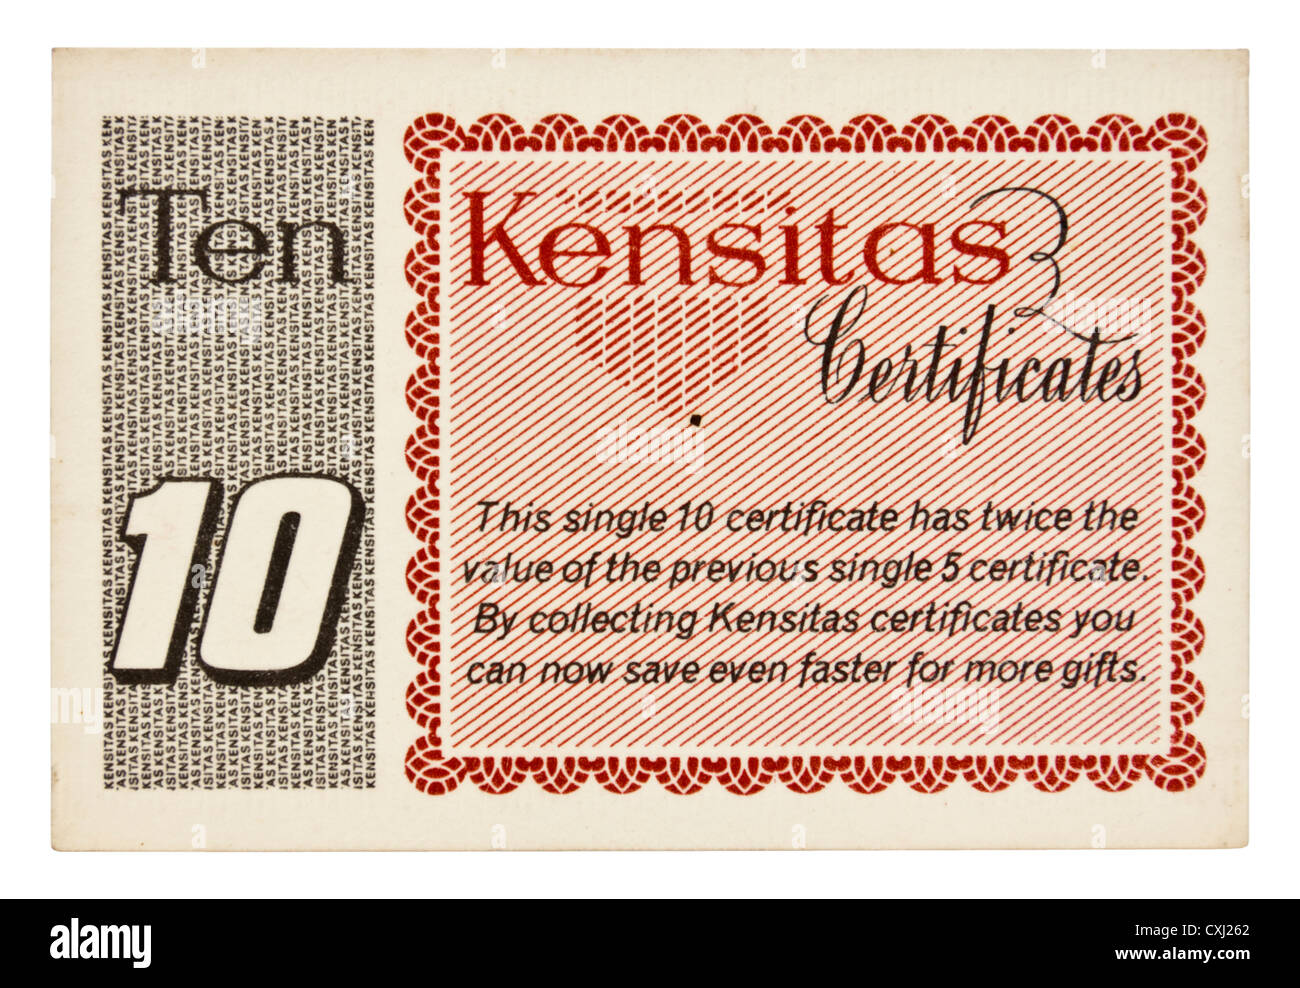 1930er Jahren Geschenk Kensitas "Ten Punkt" Zertifikat. Zertifikate oder Coupons wurden mit Kensitas Zigaretten verschenkt. Stockfoto